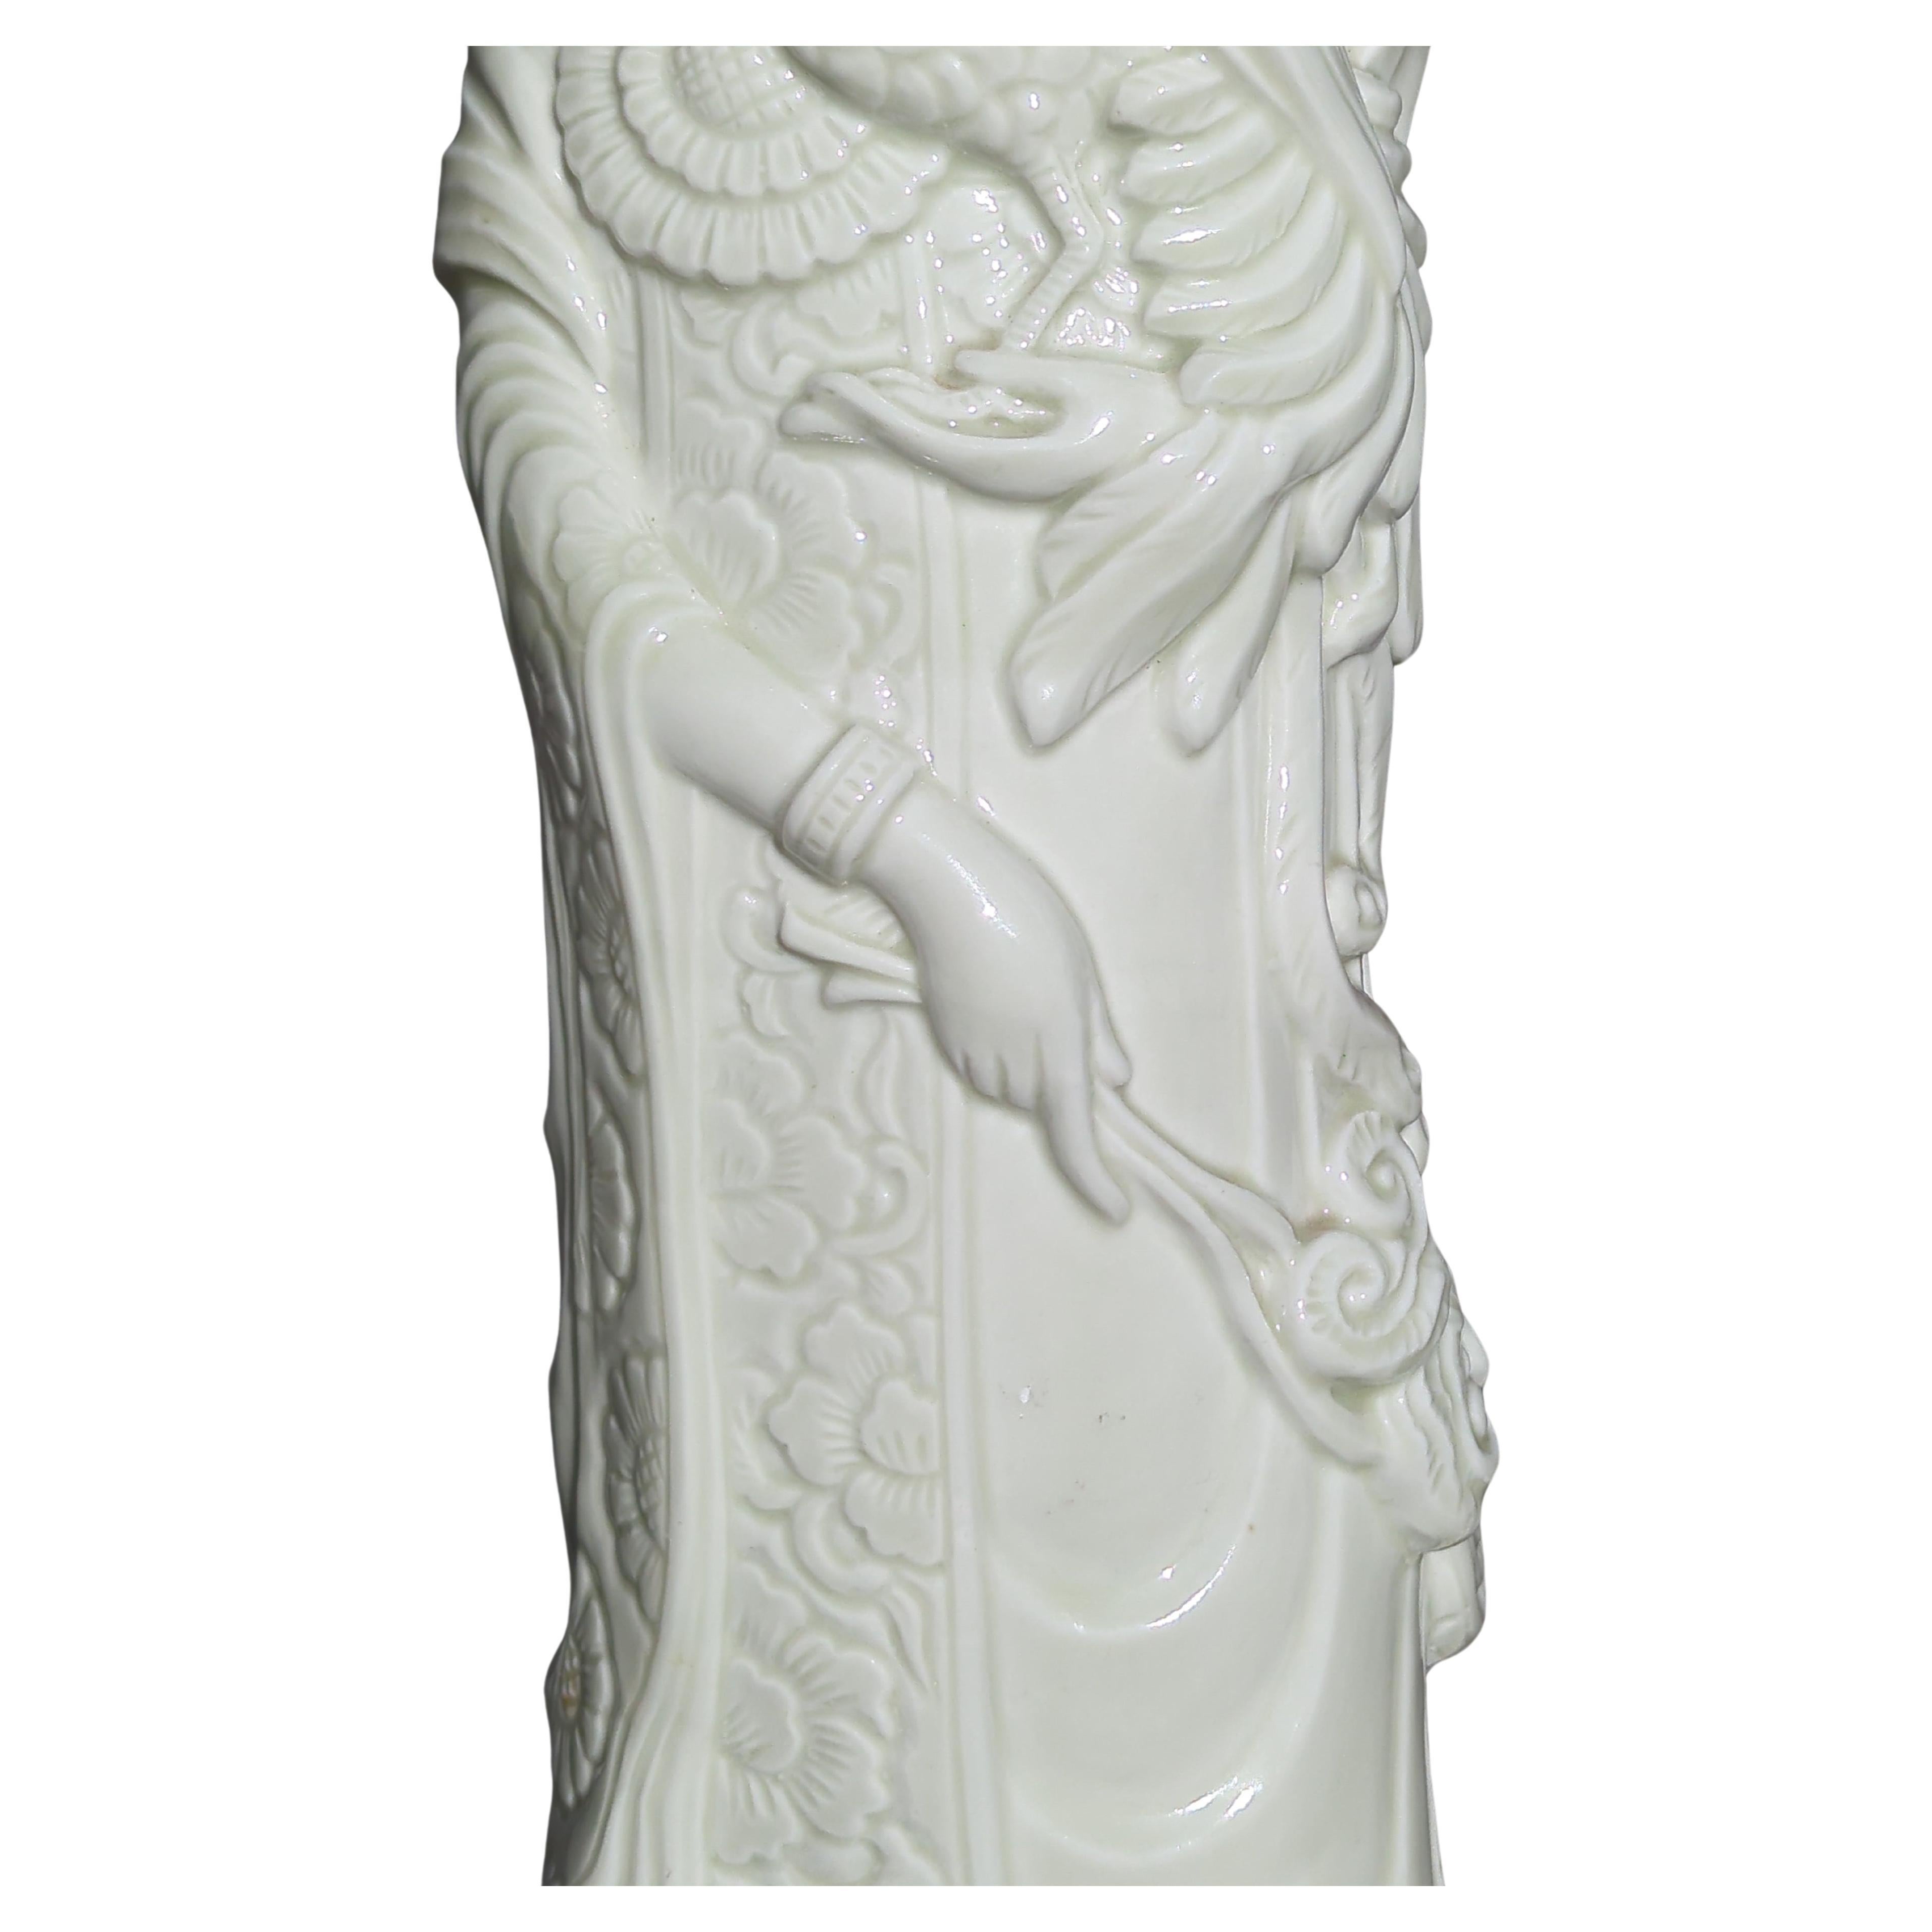 Diese riesige, 23 Zoll große Statue aus chinesischem Vintage-Porzellan stellt Xi Wang Mu (西王母) dar, die verehrte Göttin des westlichen Paradieses, eine Figur von großer Bedeutung in der taoistischen Mythologie. Xi Wang Mu, die als Königinmutter des